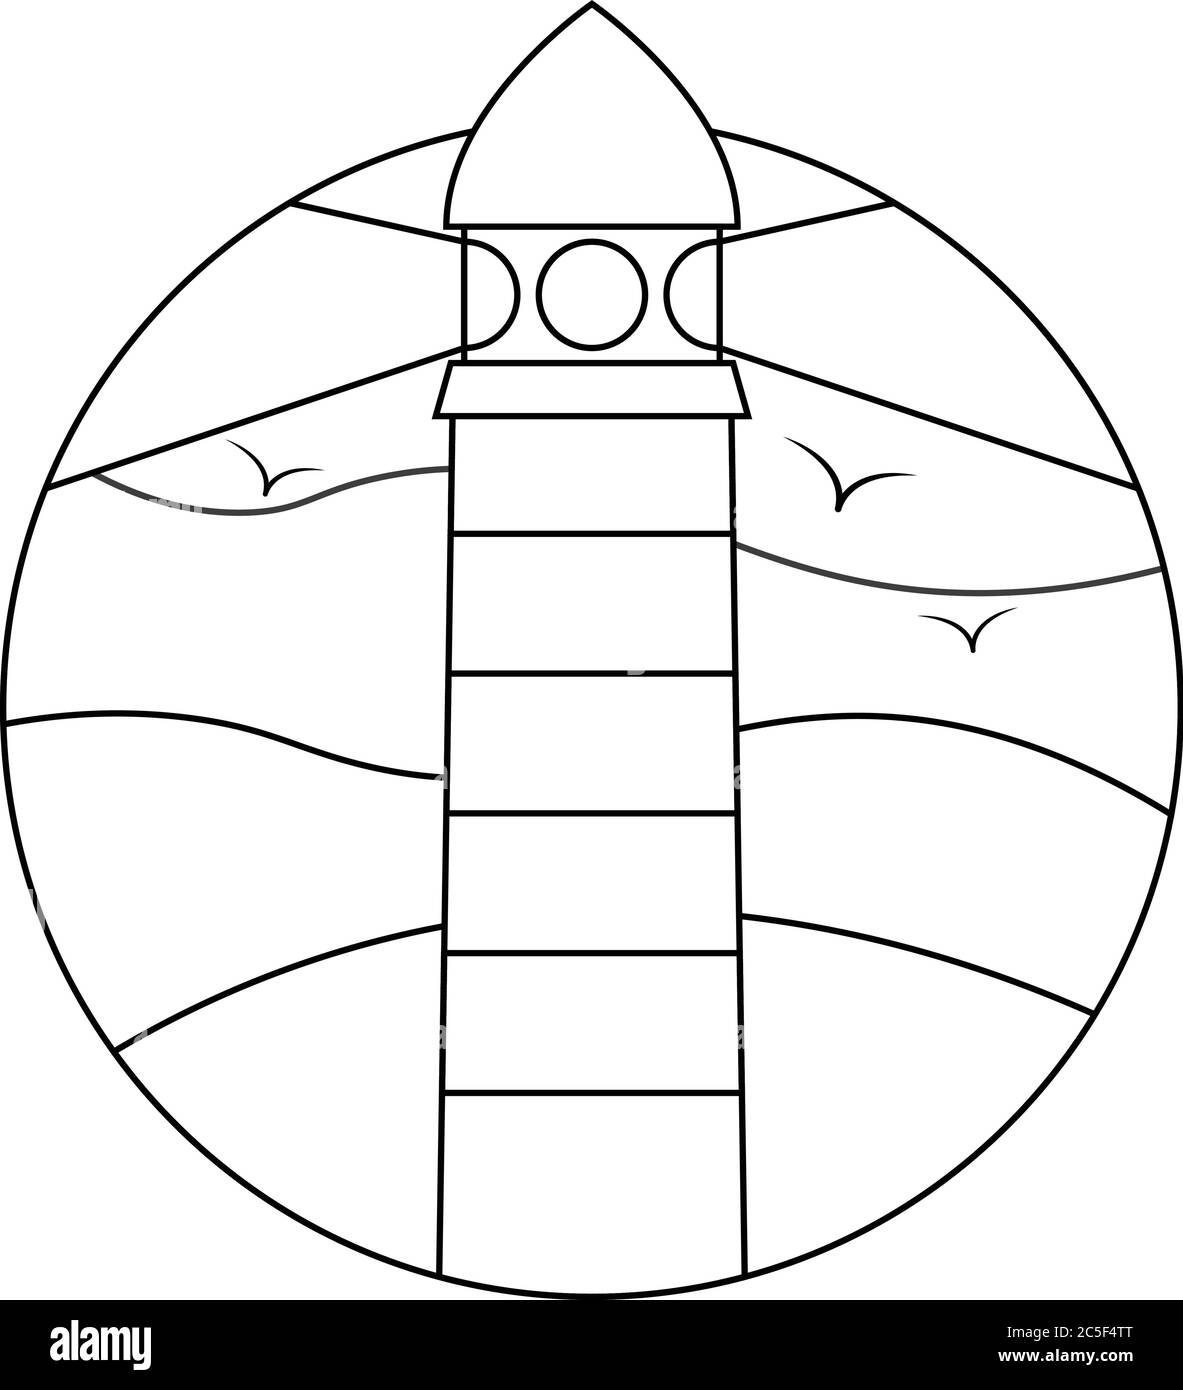 Linea bianca e nera icona del faro d'arte simbolo della luce di avvertimento della nave con illustrazione del disegno degli uccelli Illustrazione Vettoriale